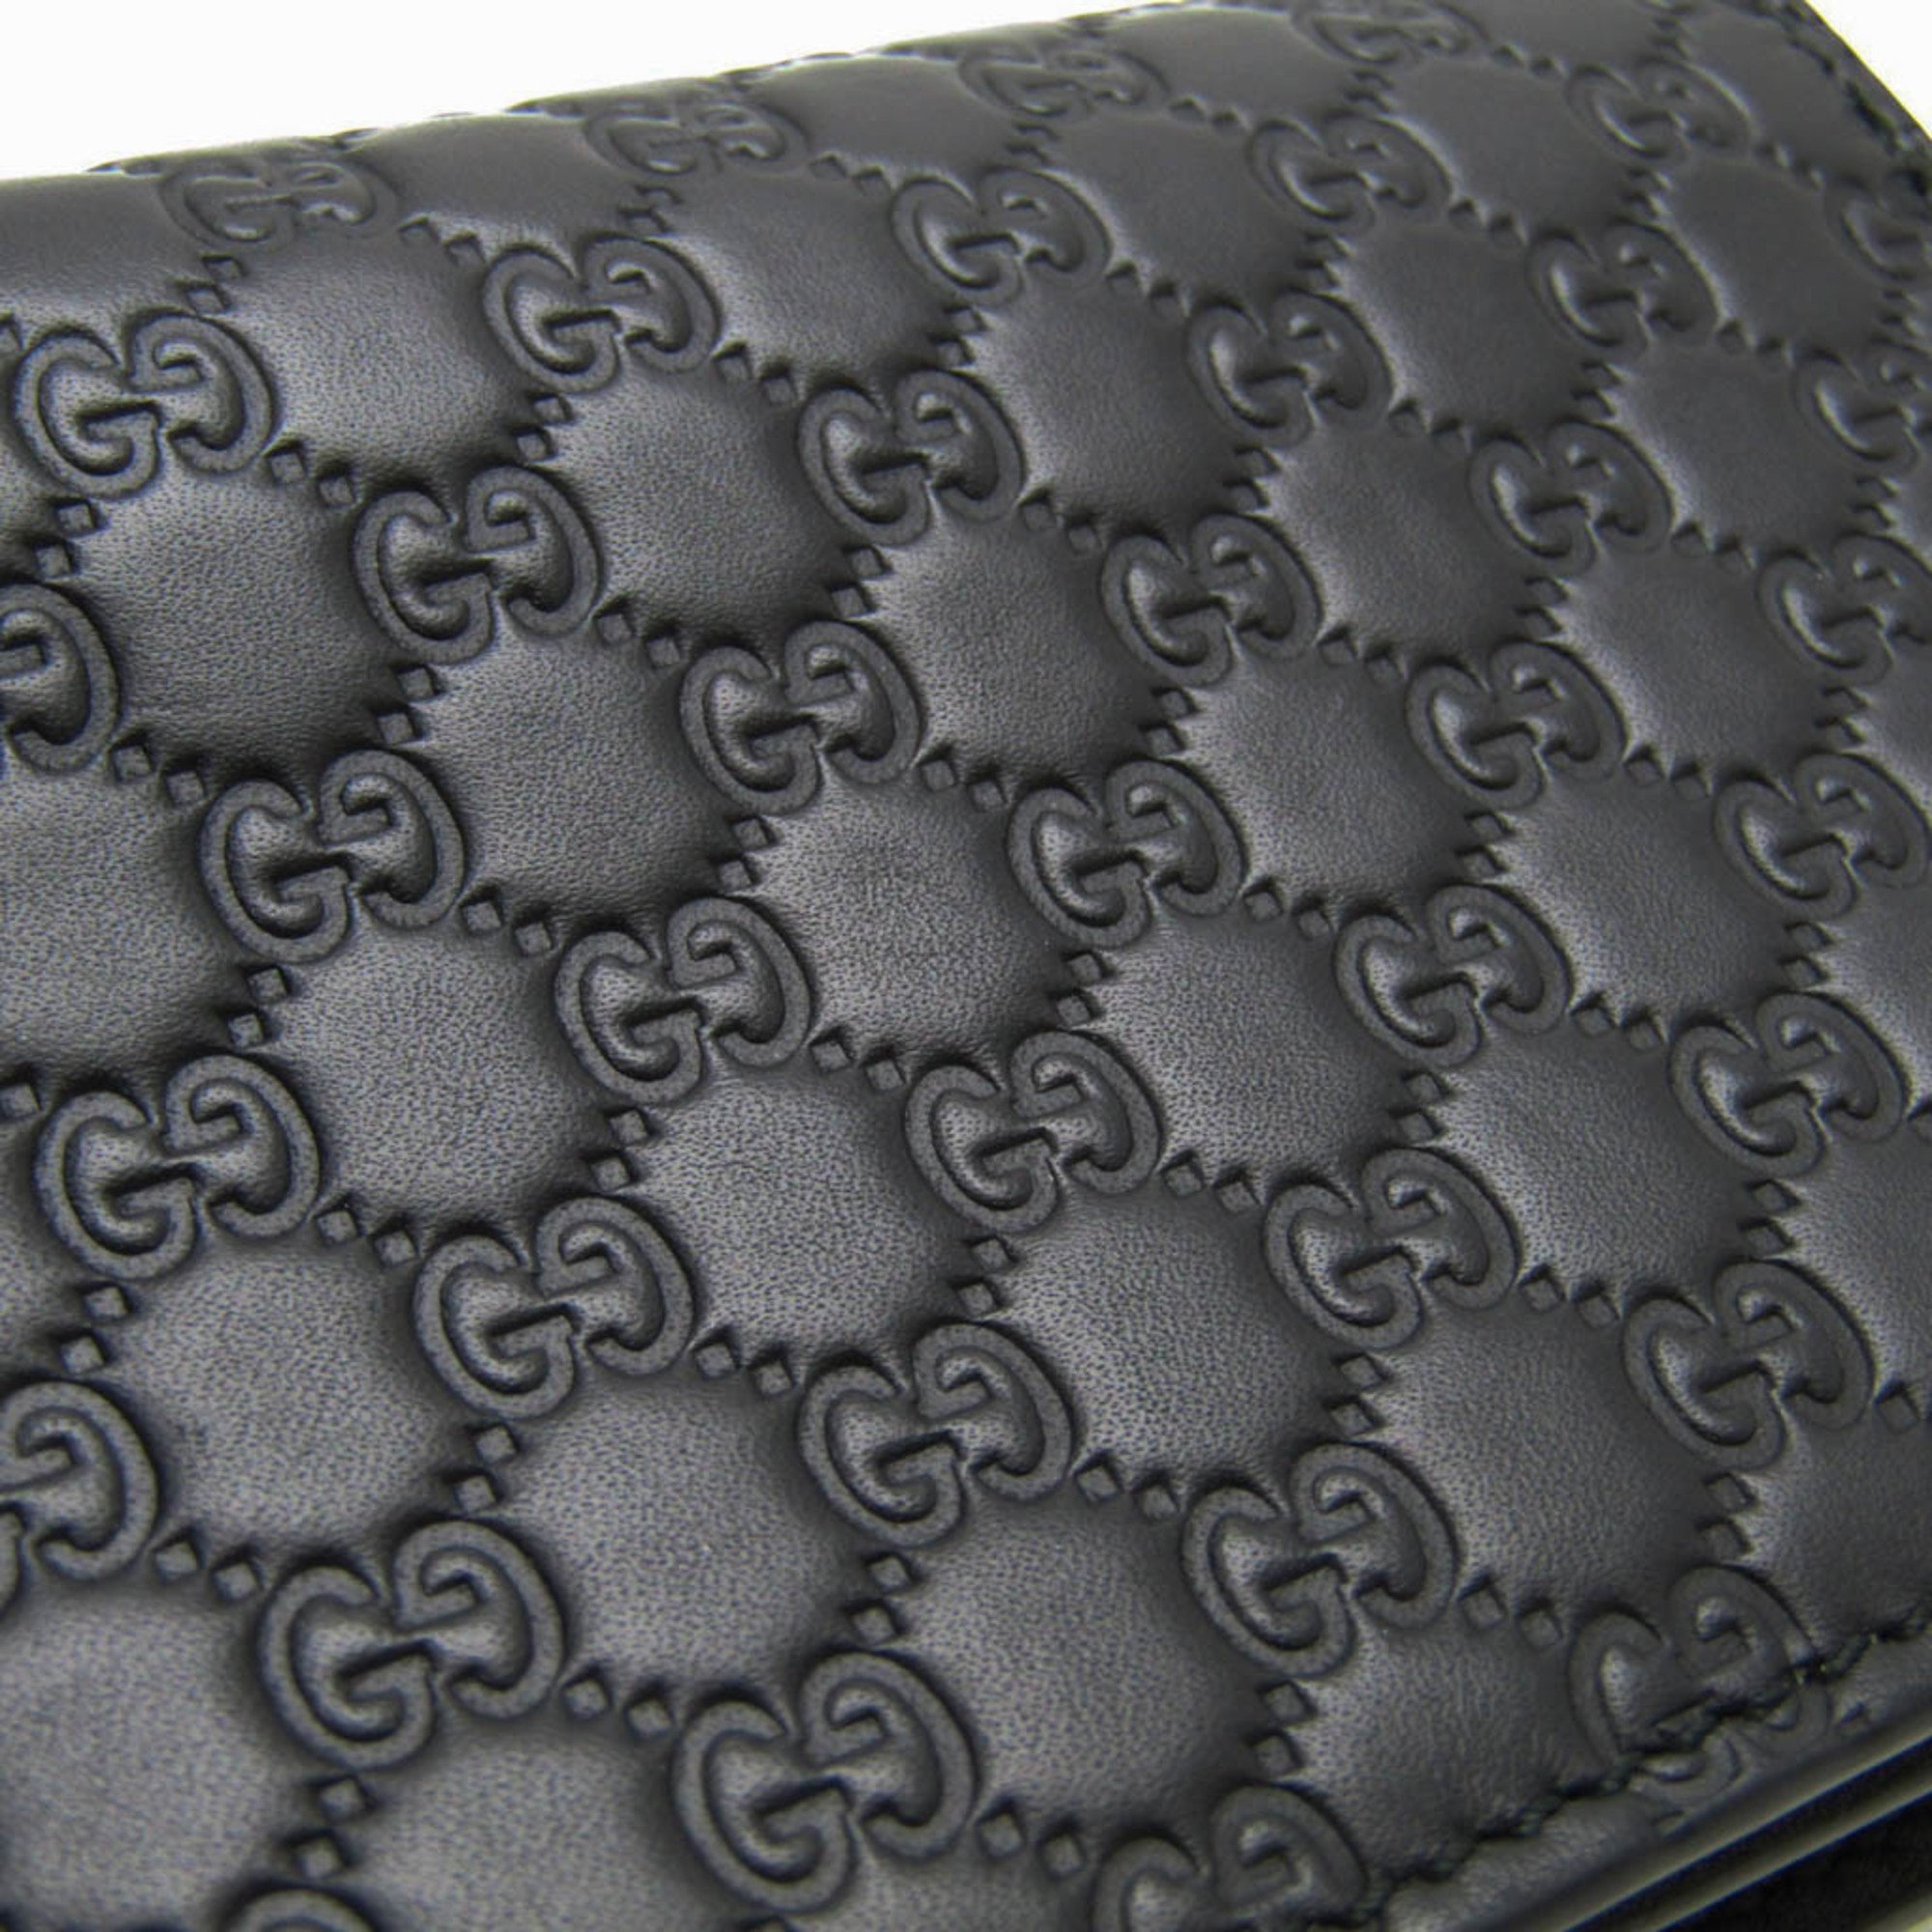 Gucci MicroGuccissima 544474 Leather Card Case Black